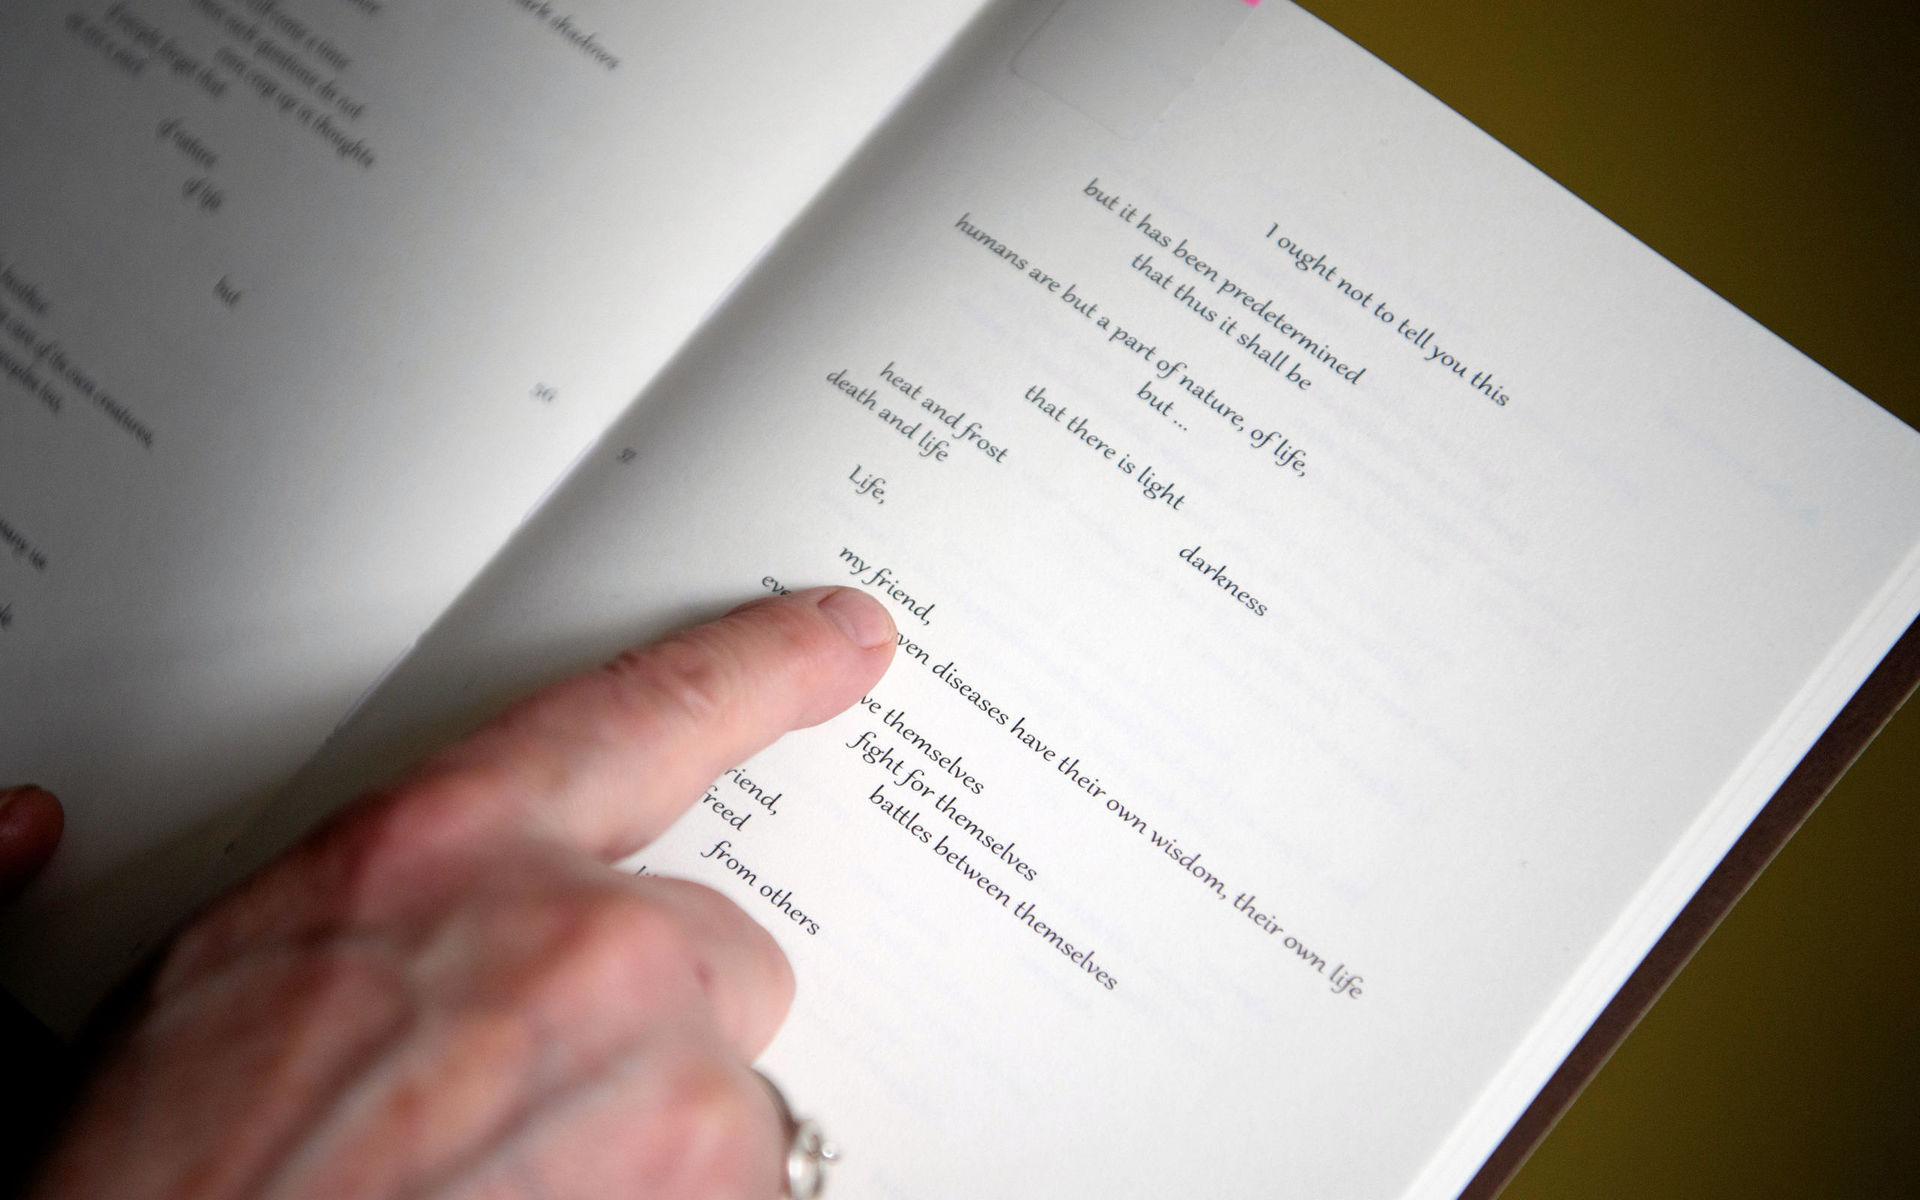 De flesta texterna i projektet är nyskrivna, men Åsa Simma läser in en dikt av samiske Nils Aslak Valkeapää.